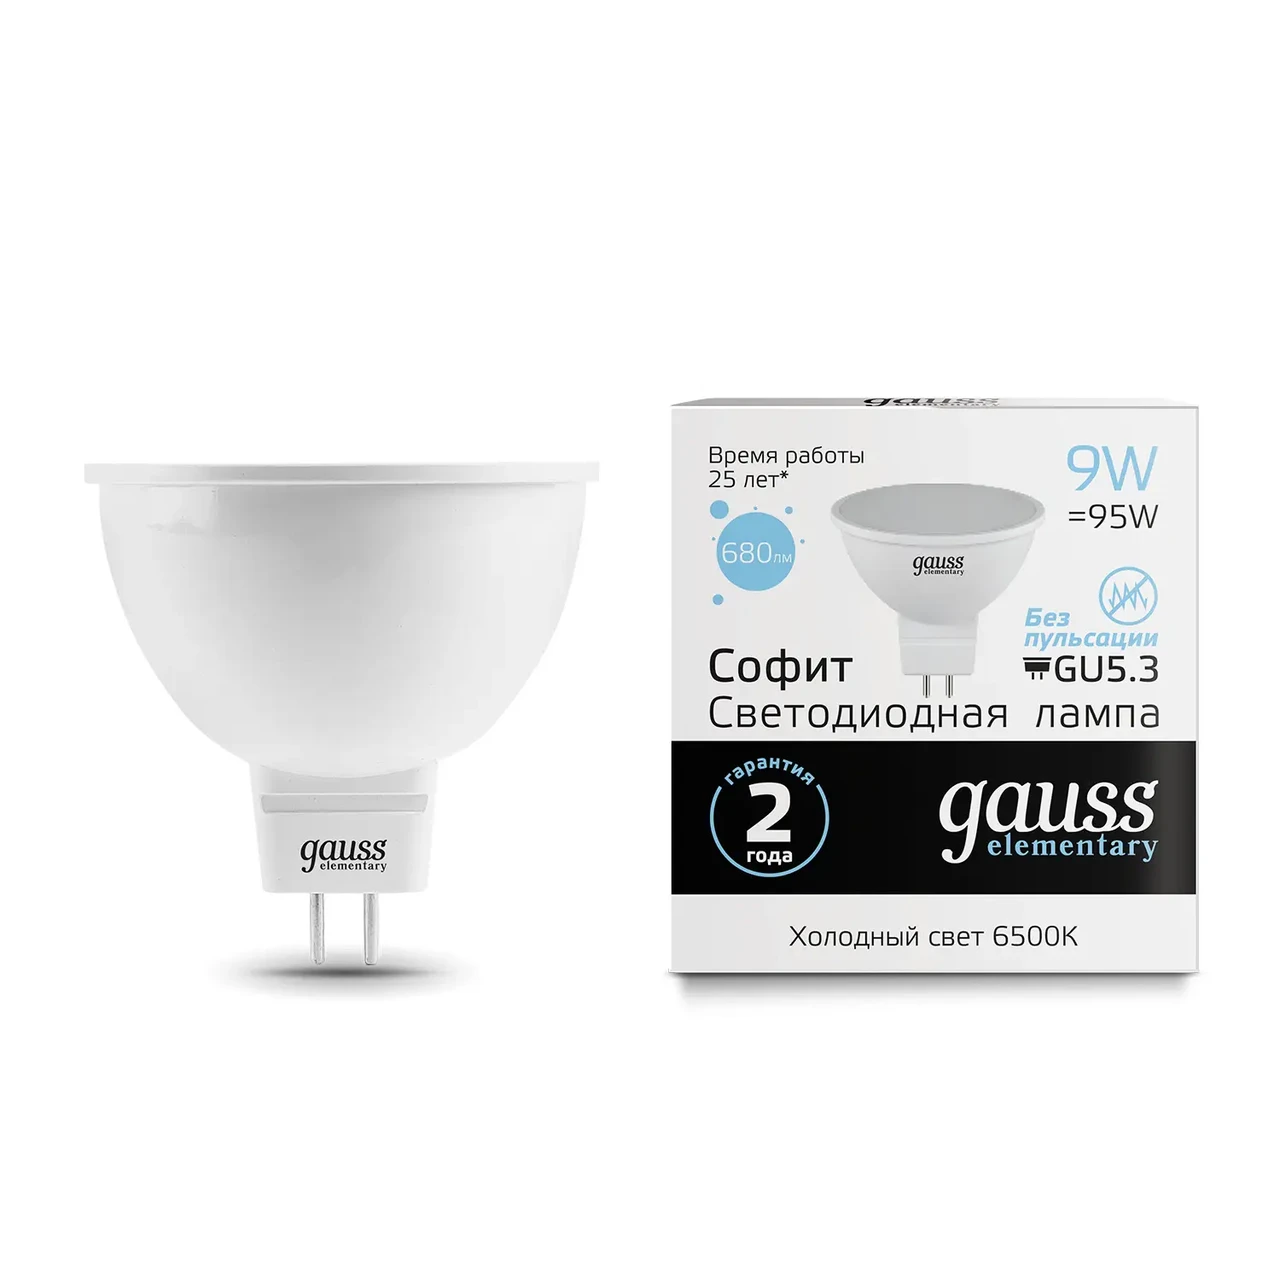 Лампа Gauss Elementary MR16 9W 680lm 6500K GU5.3 LED 1/10/100